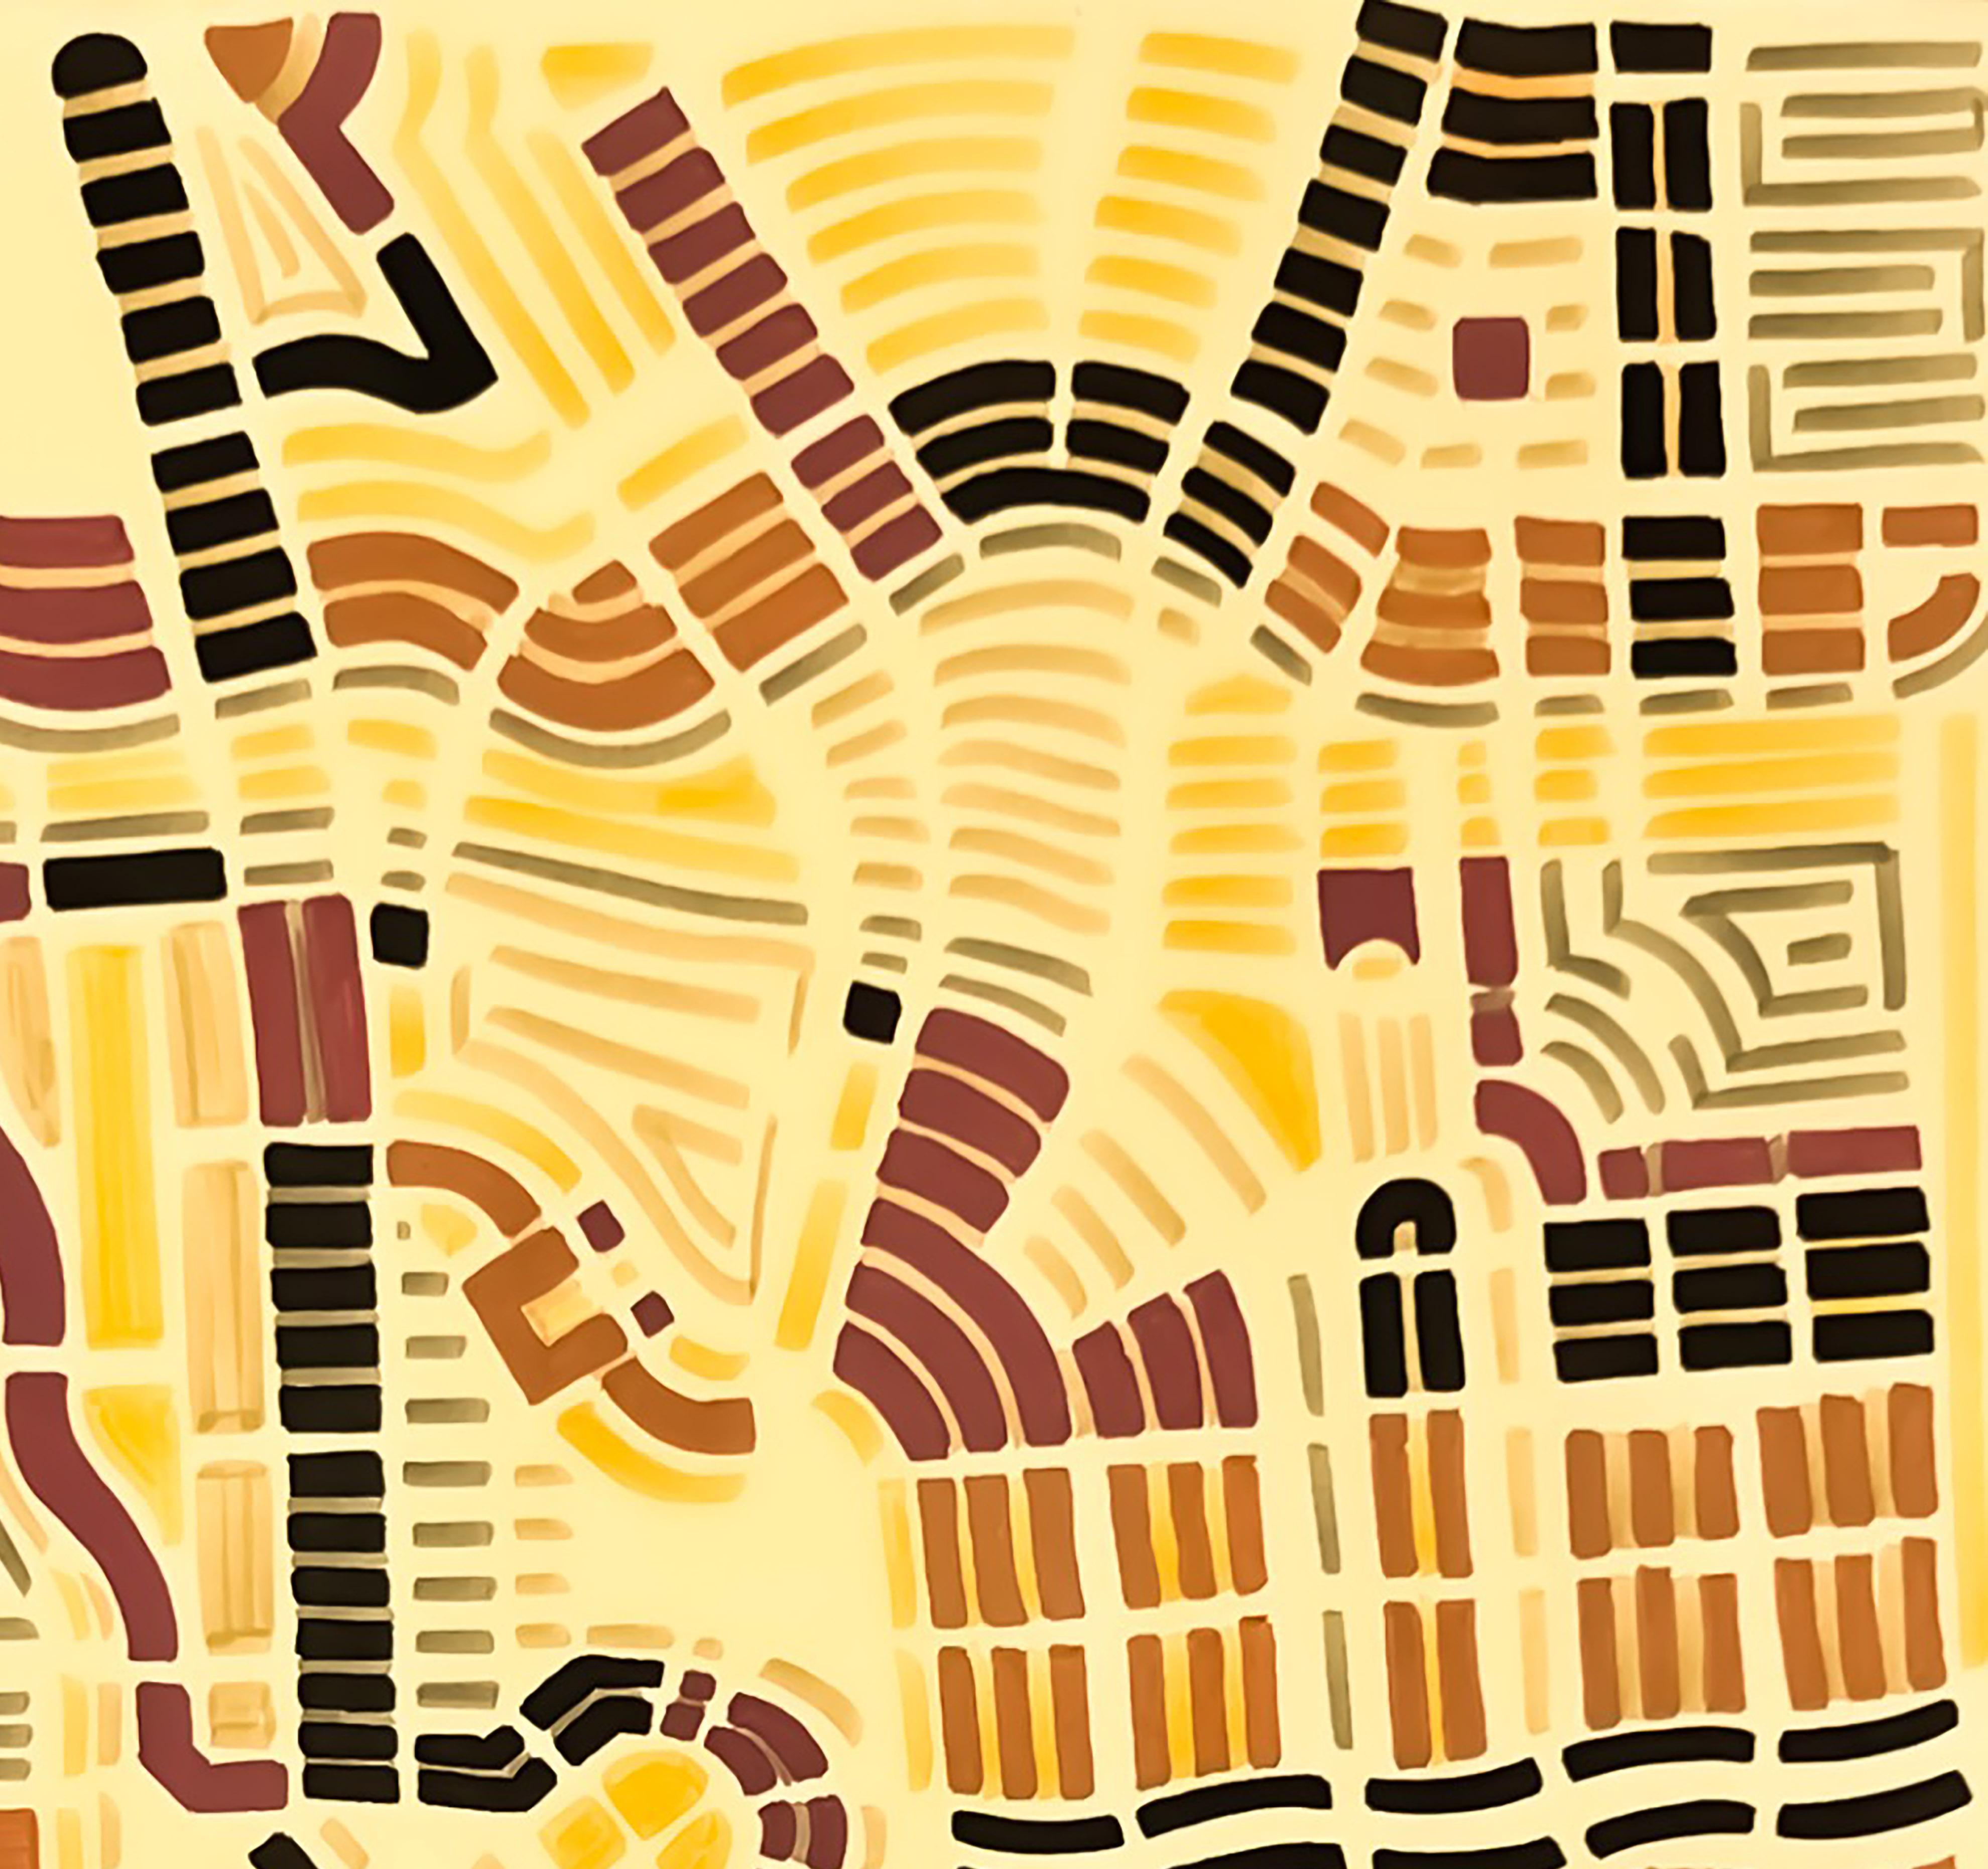 Urban Utopia - Orange Abstract Drawing by Martin La Roche